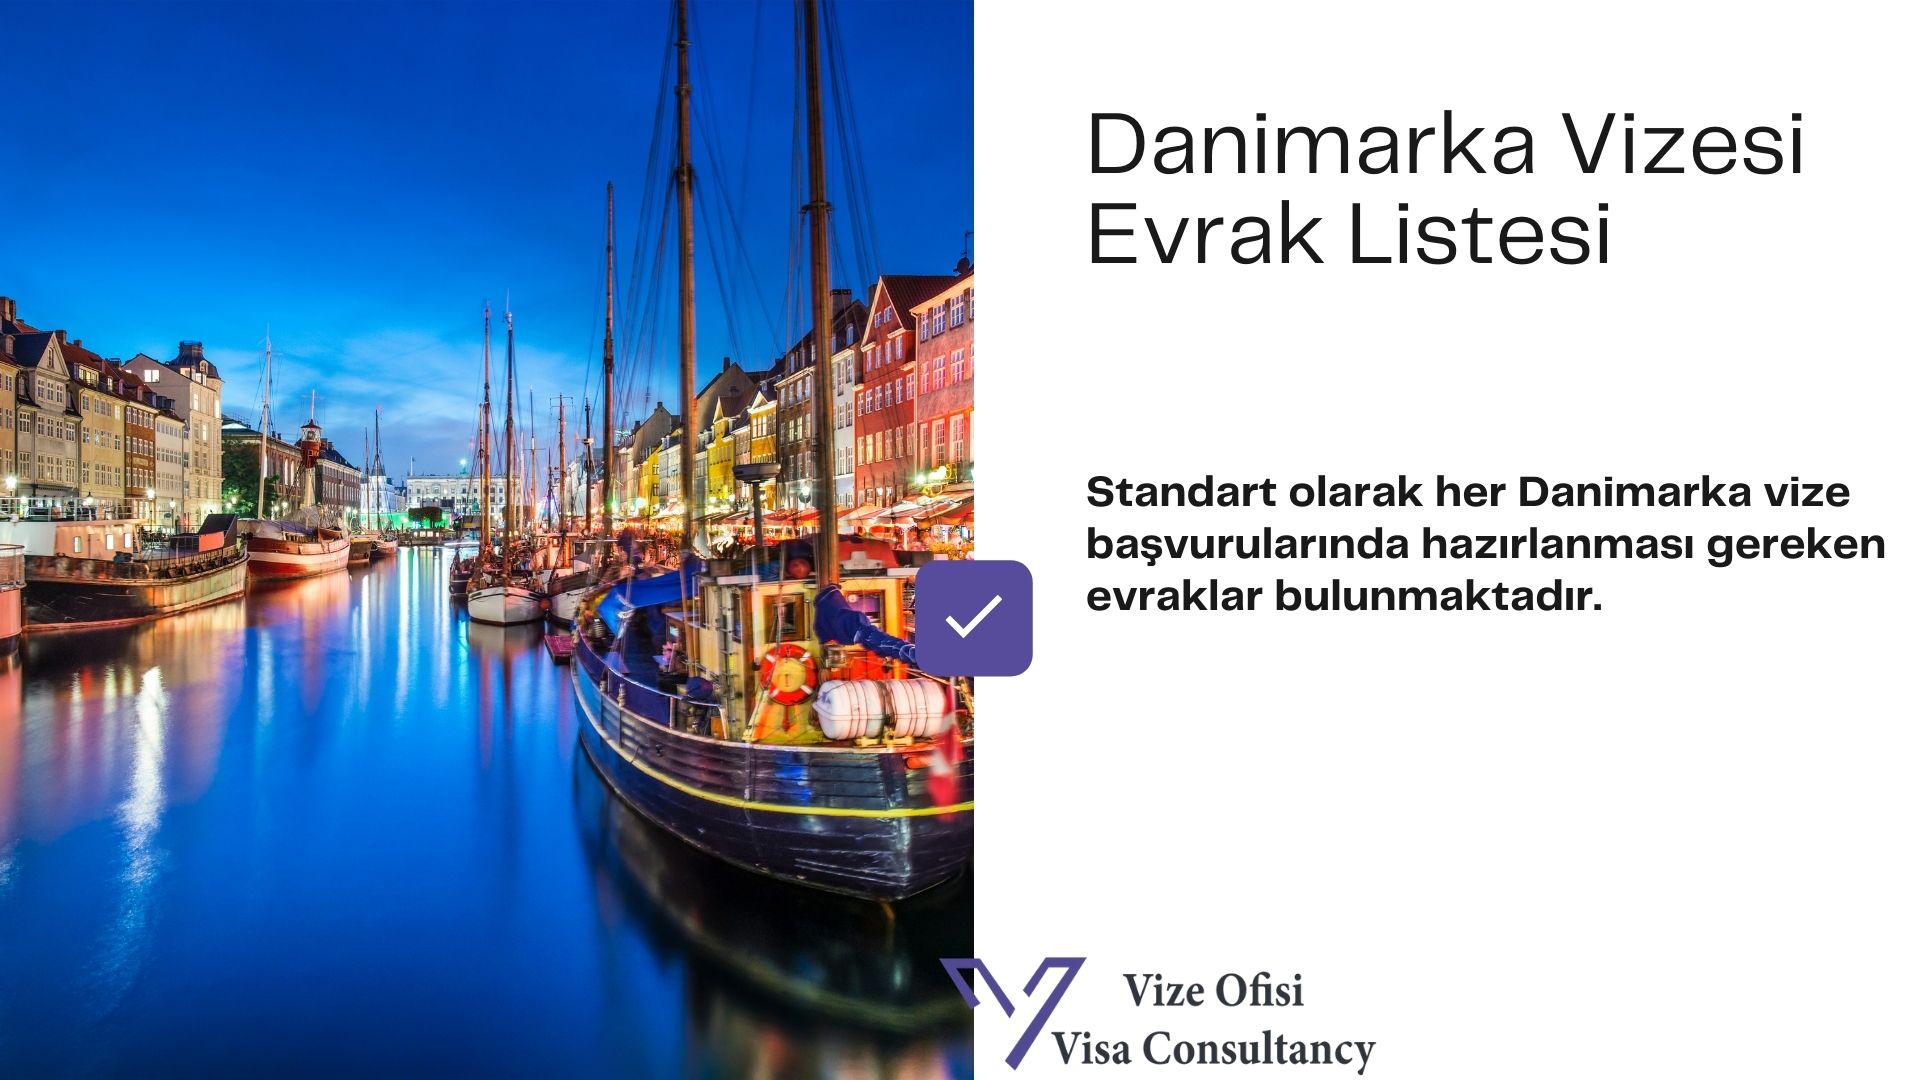 Danimarka Vize Evrakları 2021 Tam Liste